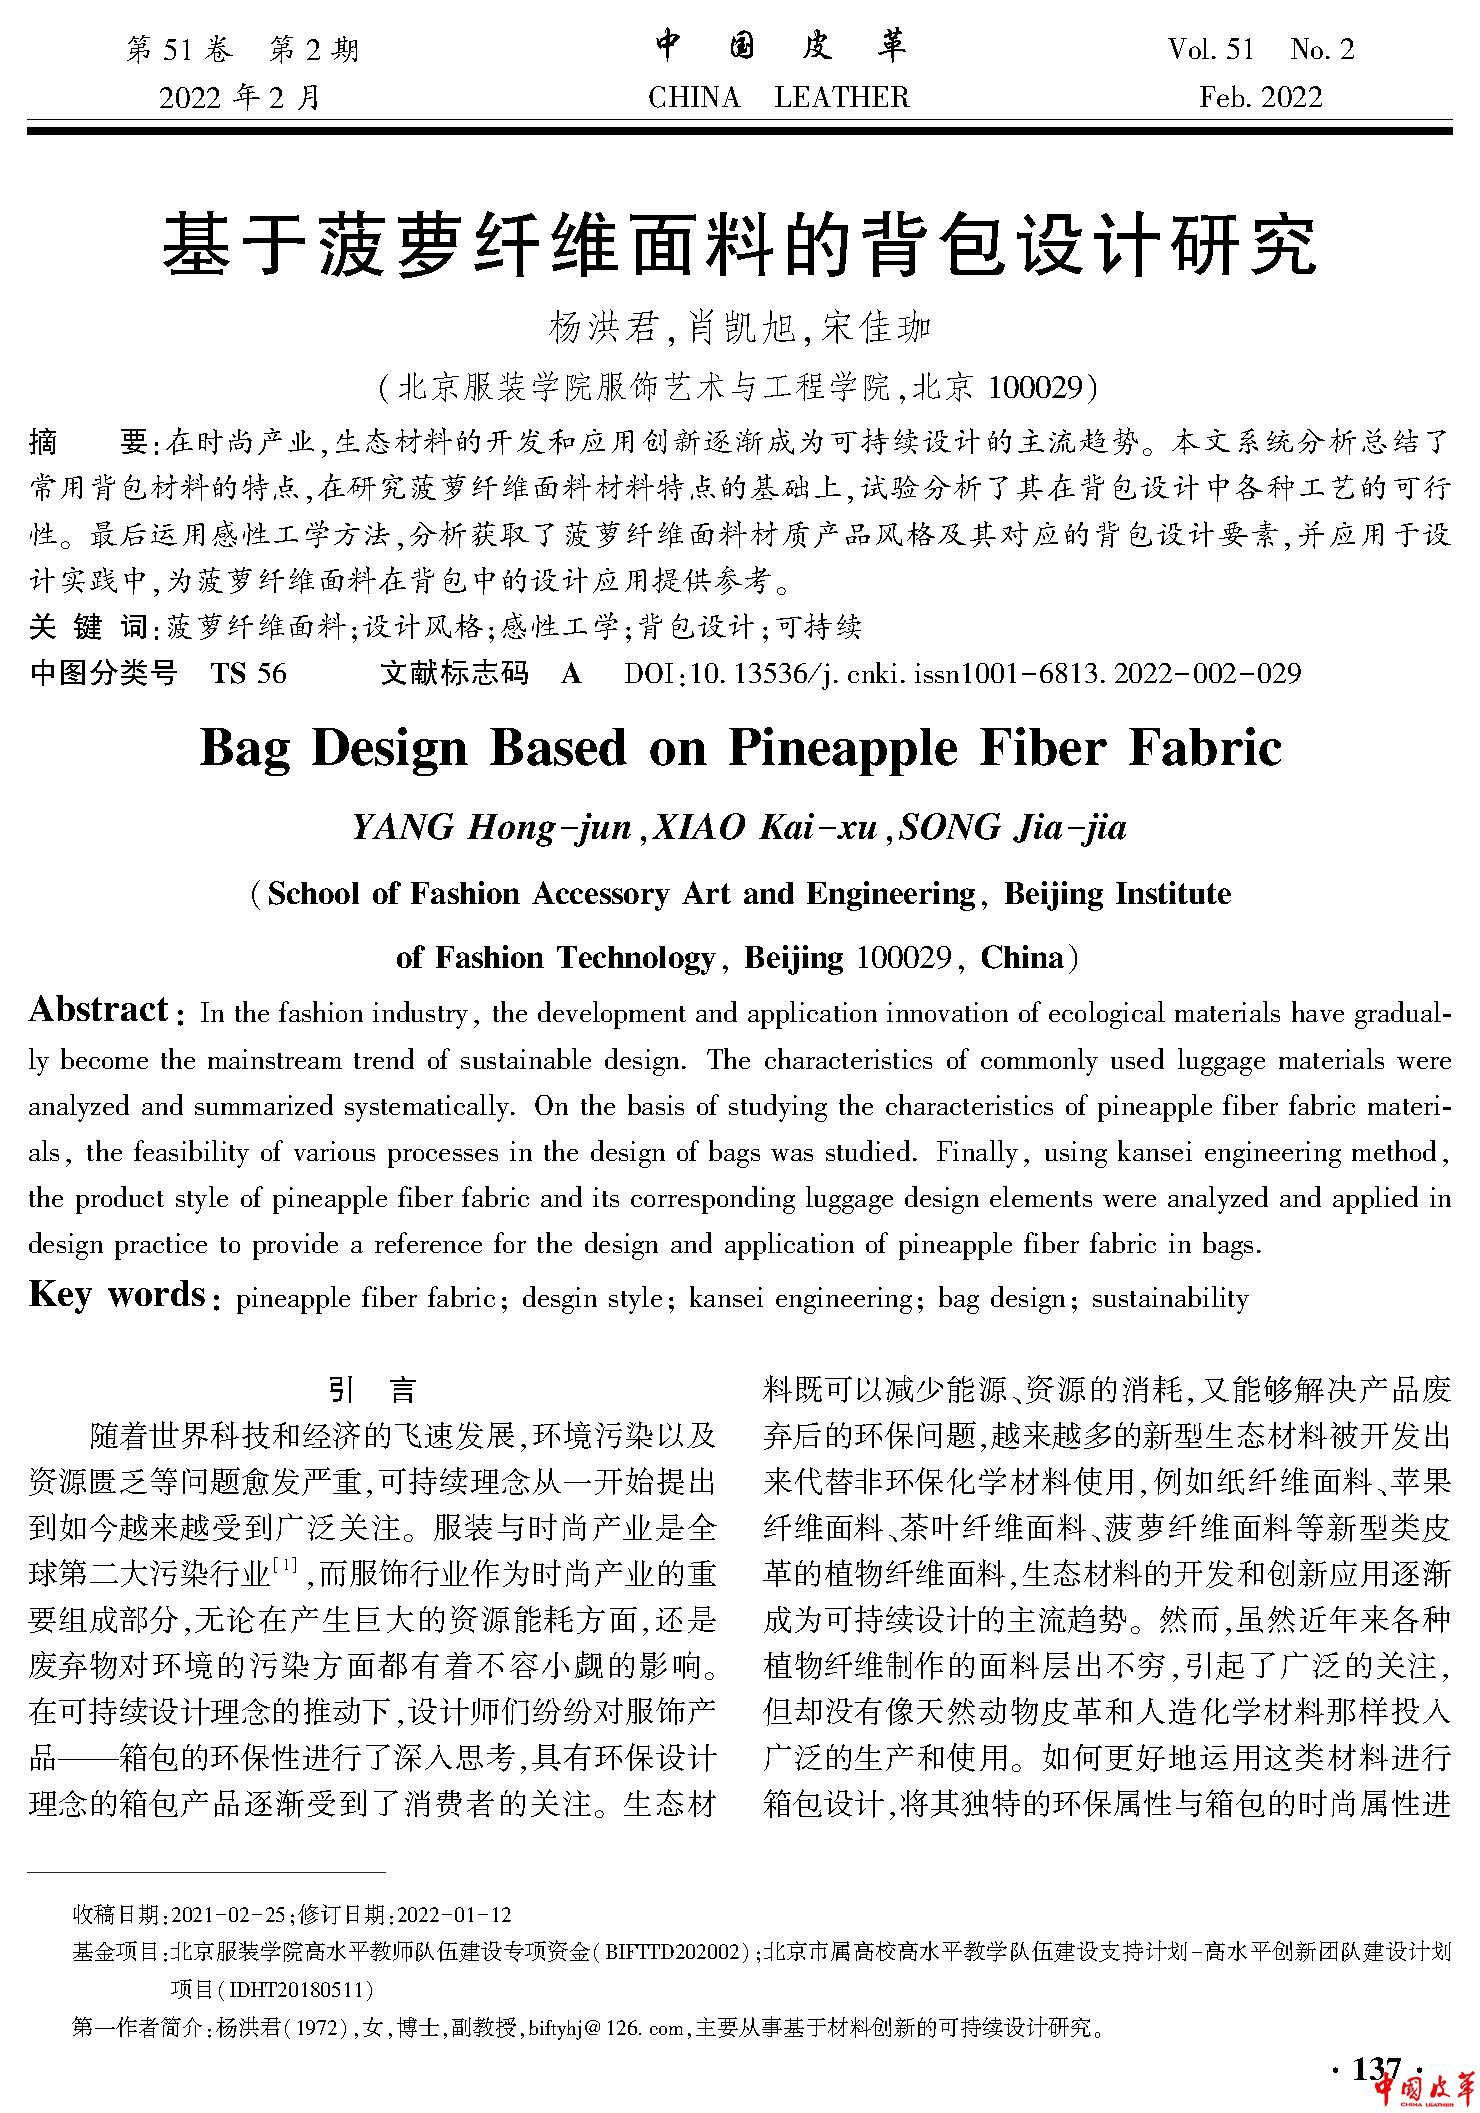 页面提取自－中国皮革2022年第2期P1-149-8.jpg